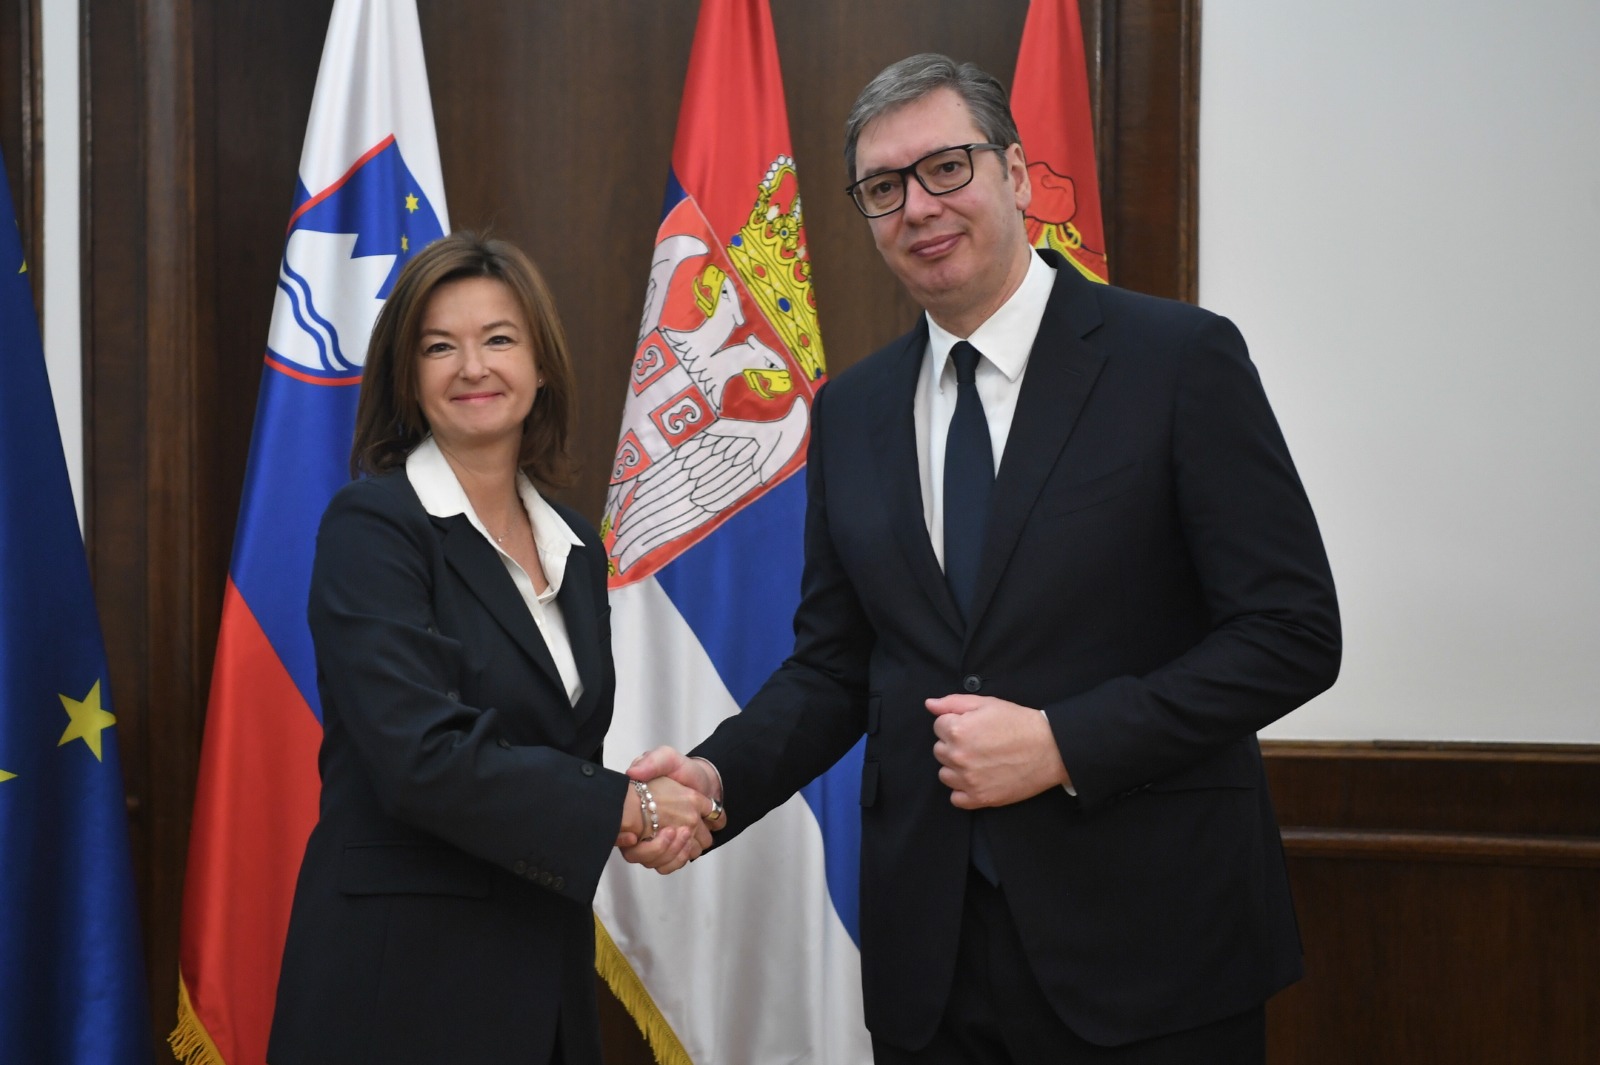 Tanja Fajon na obisku v Srbiji, kjer se je srečala tudi z Aleksandrom Vučićem, predsednikom Srbije